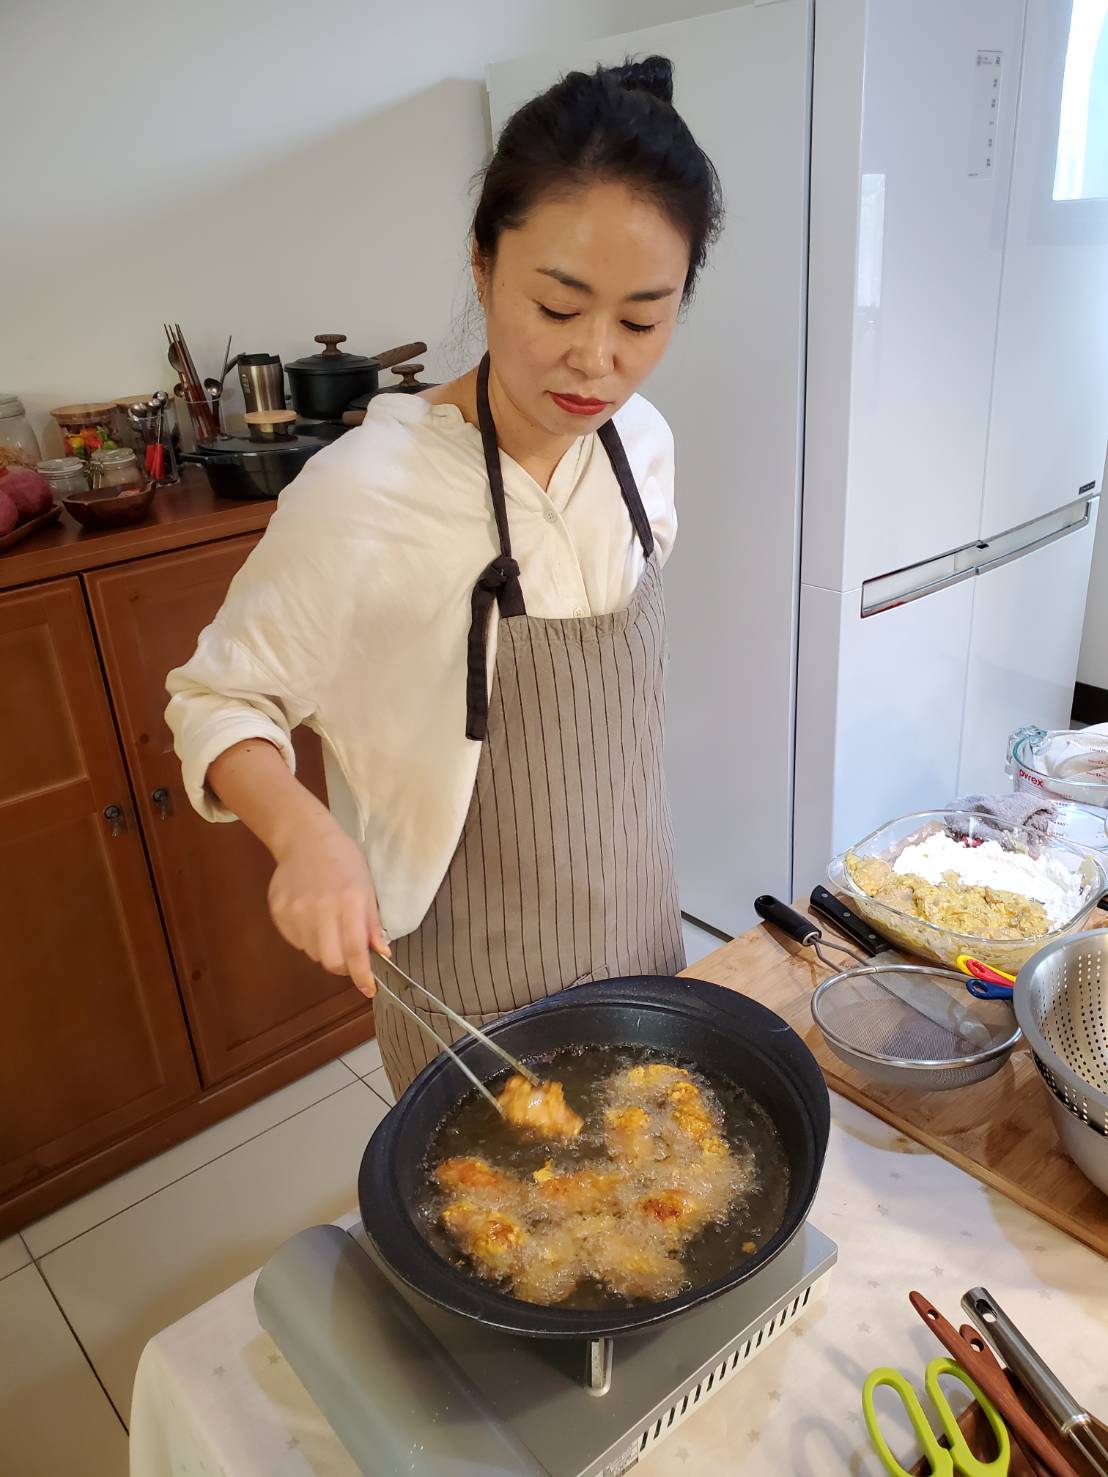 Orang-orang mengambil makanan sebagai surga dan makanan sebagai media. Di masa depan, Zhang Meihe akan terus menggunakan masakan Taiwan untuk mempromosikan pertukaran budaya antara Taiwan dan Korea Selatan. Zhang Meihe tidak hanya mengajar bahasa Korea, tetapi juga seorang seniman masakan Korea Taiwan. (Courtesy of Zhang Meihe)